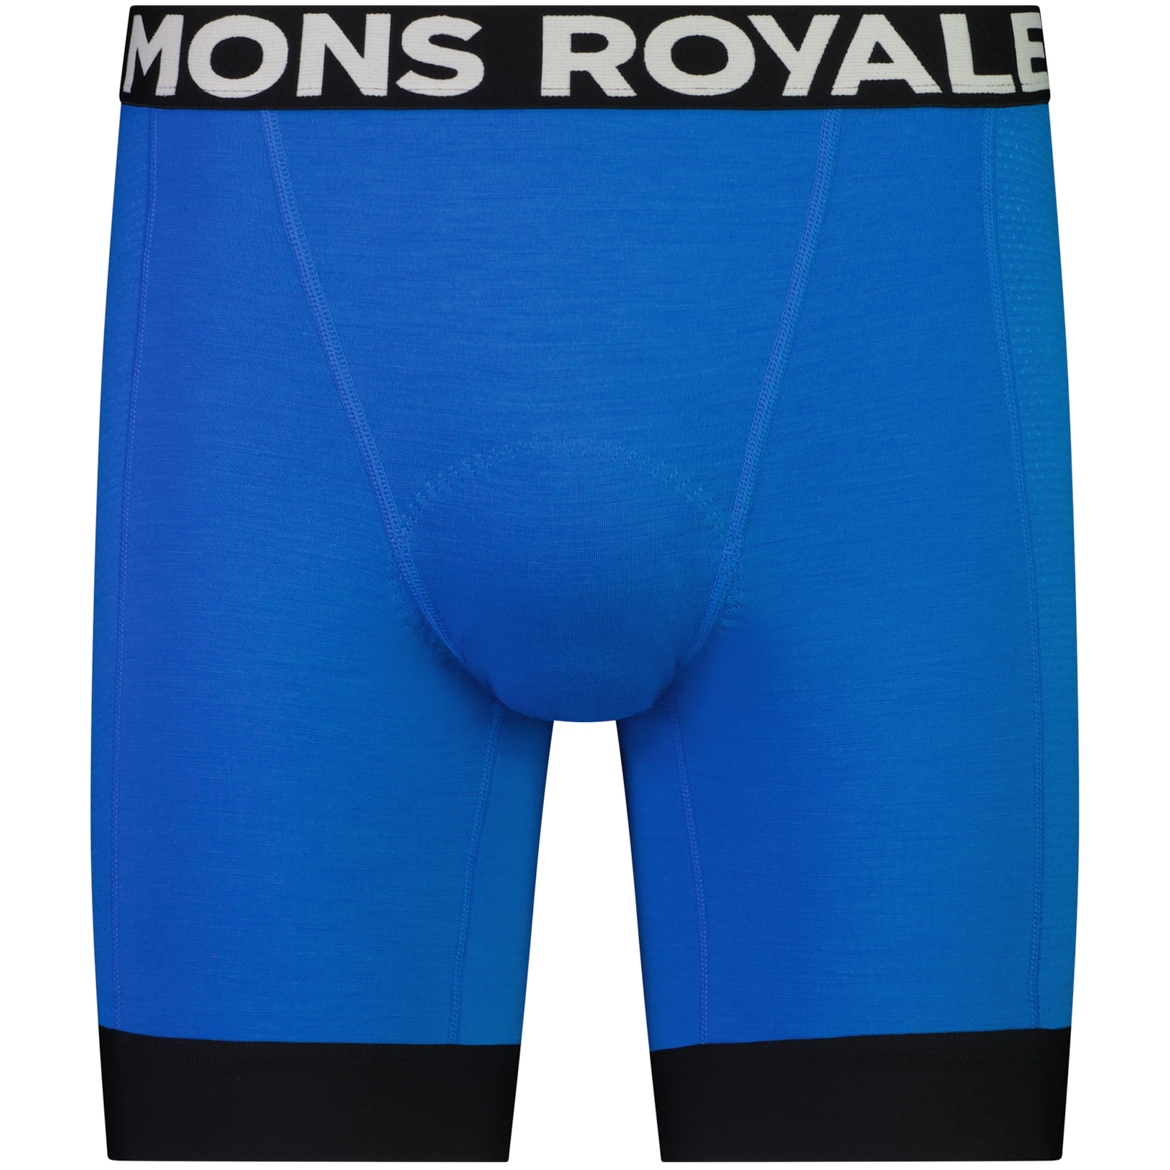 Produktbild von Mons Royale Epic Merino Shift MTB Unterhose Herren - pop blue